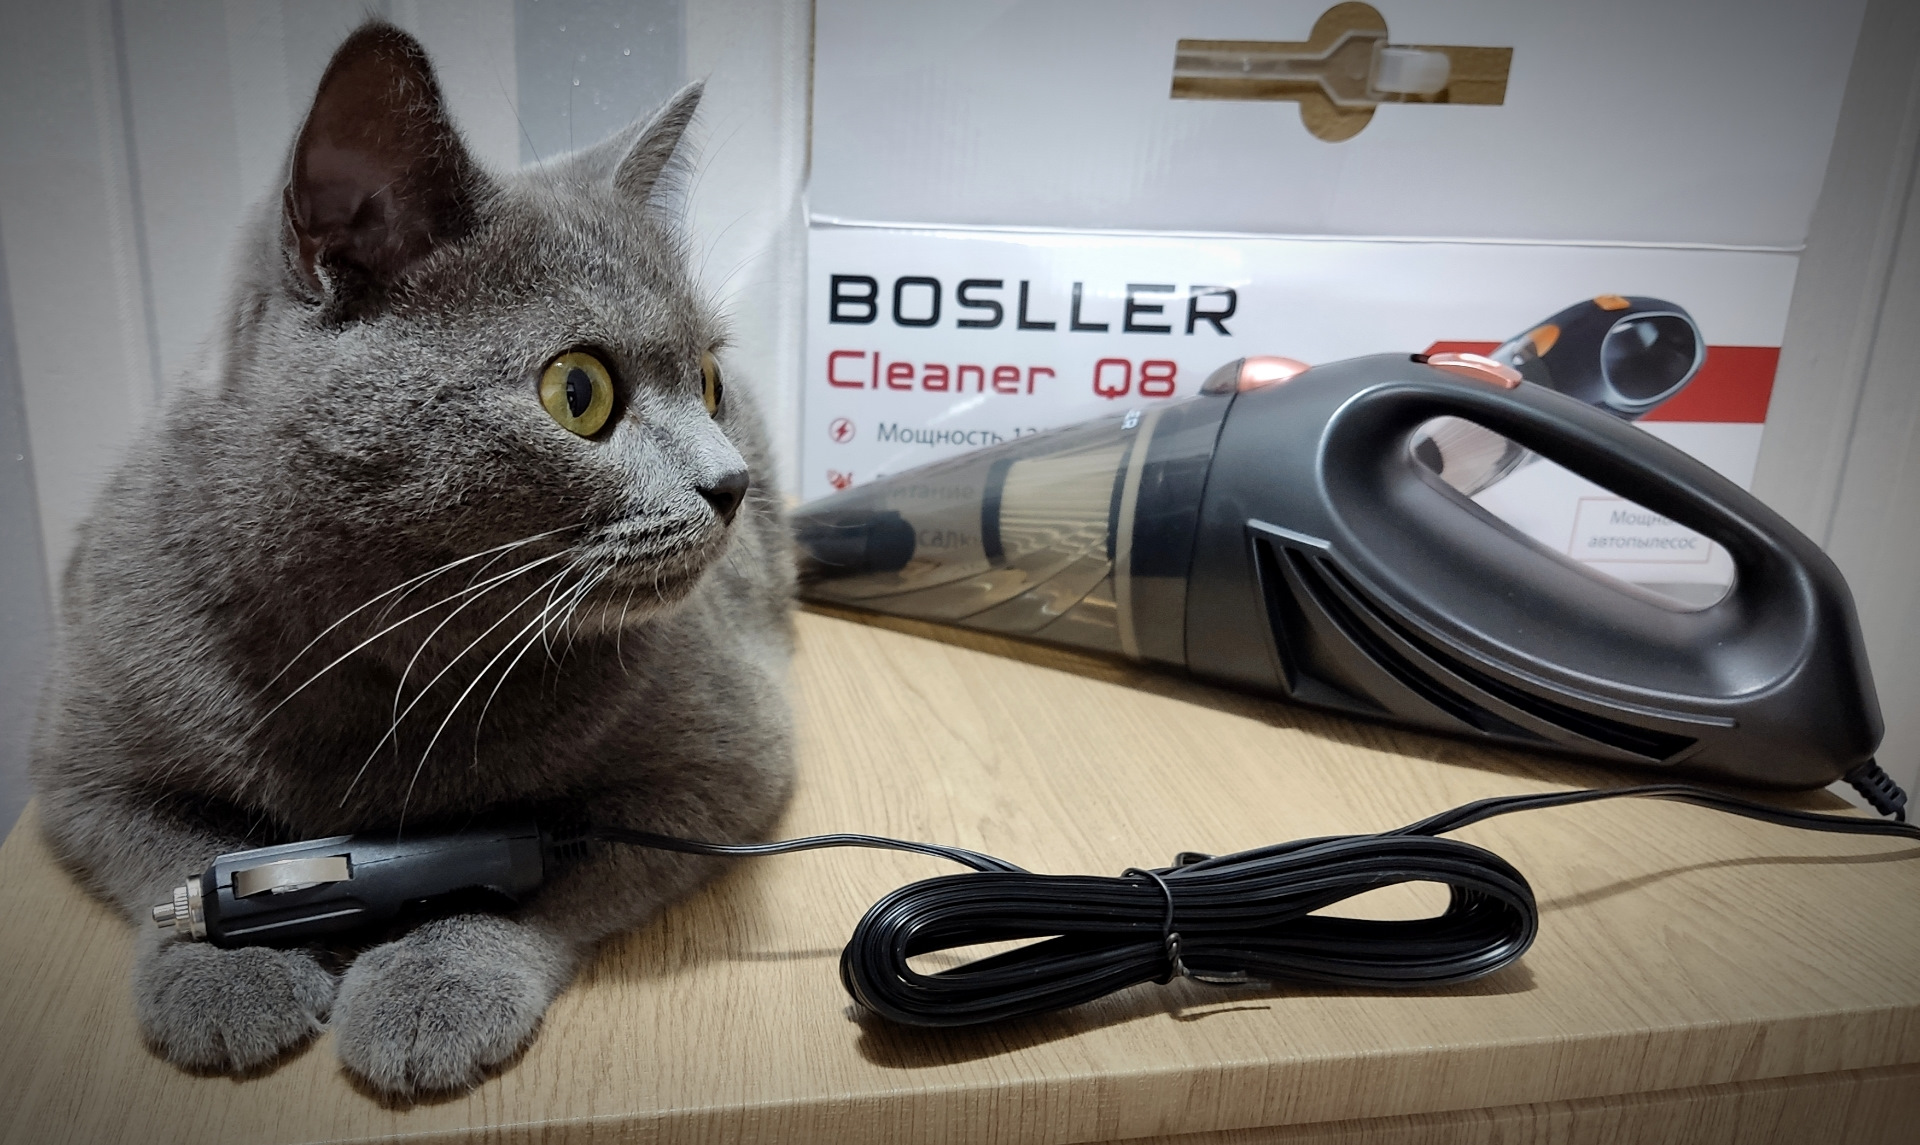 Bosller boostpow l8. BOSLLER Cleaner q8.